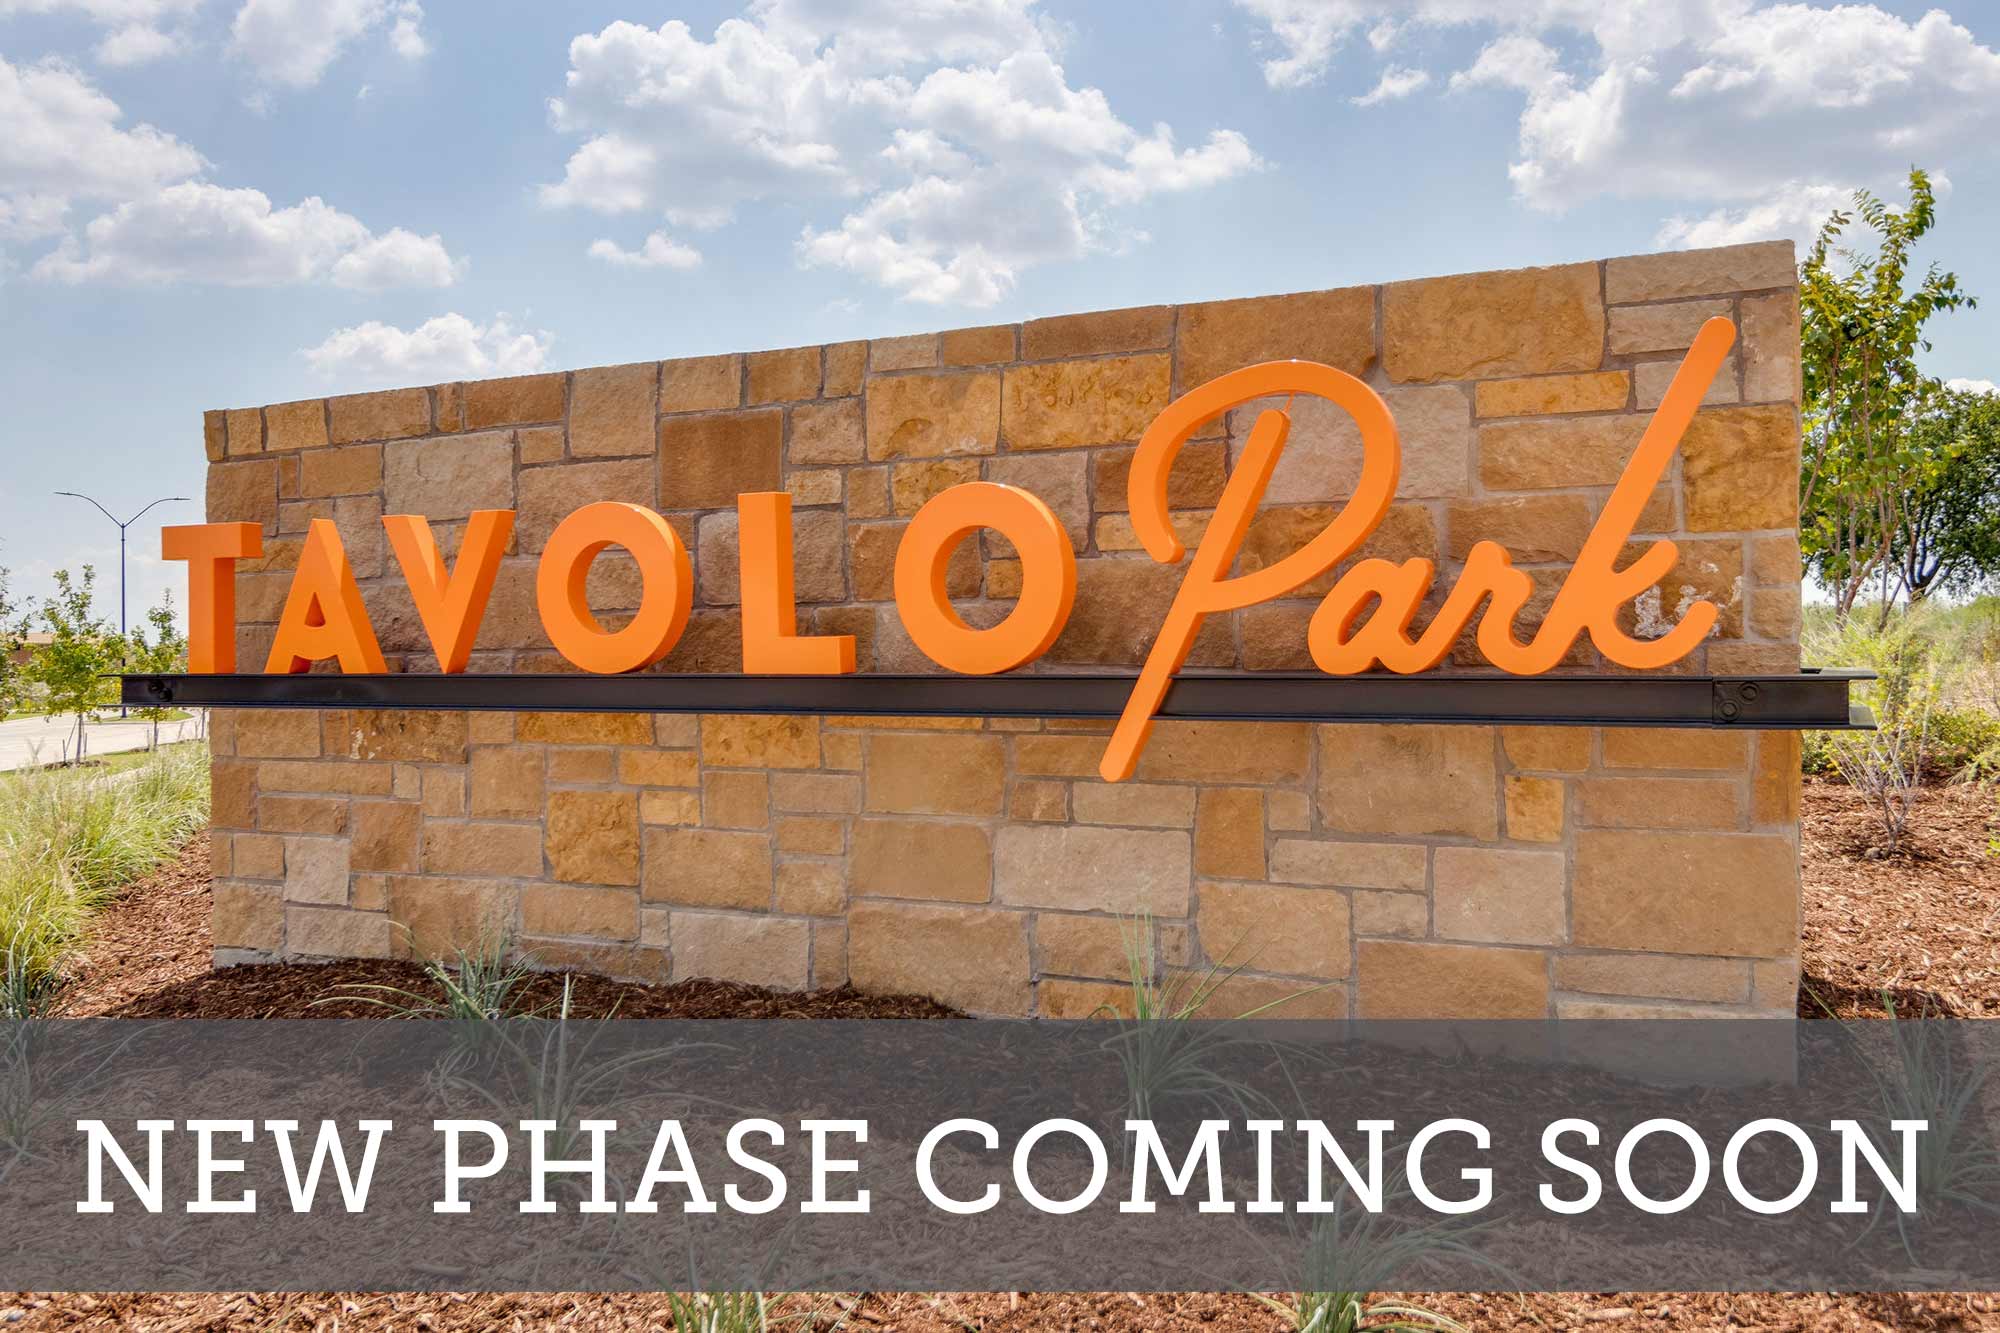 Tavolo Park - New Phase Coming Soon